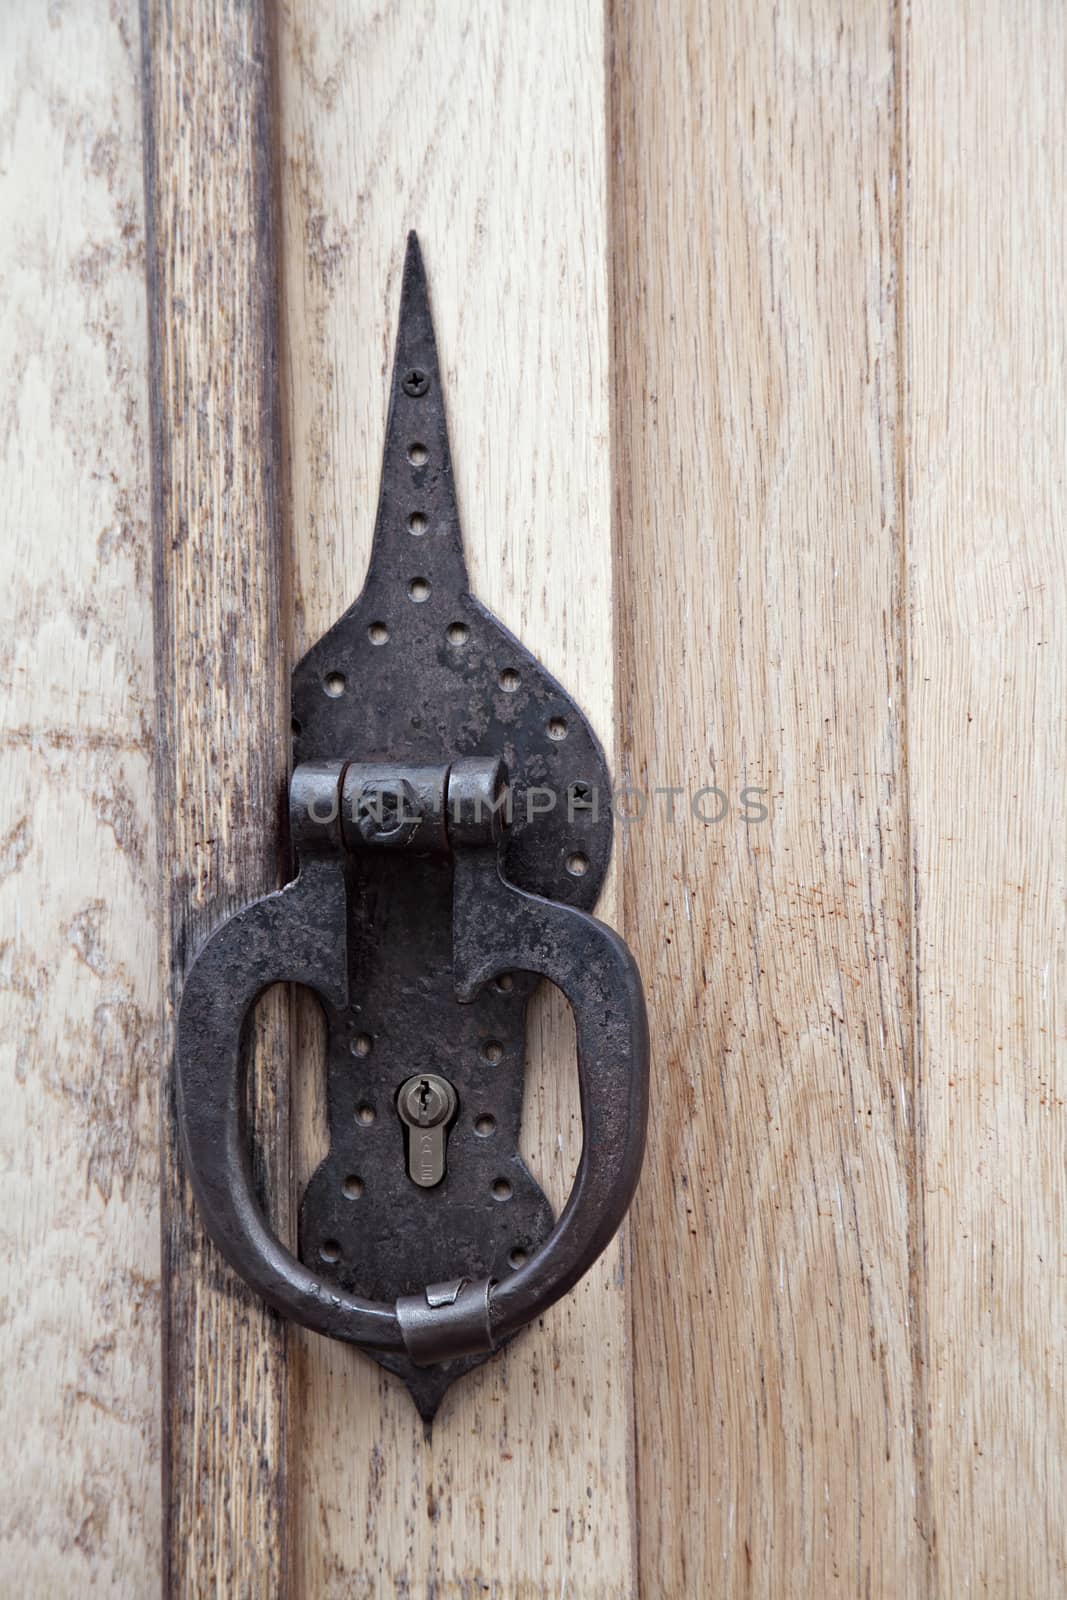 Ring-shaped door knocker on a wooden door